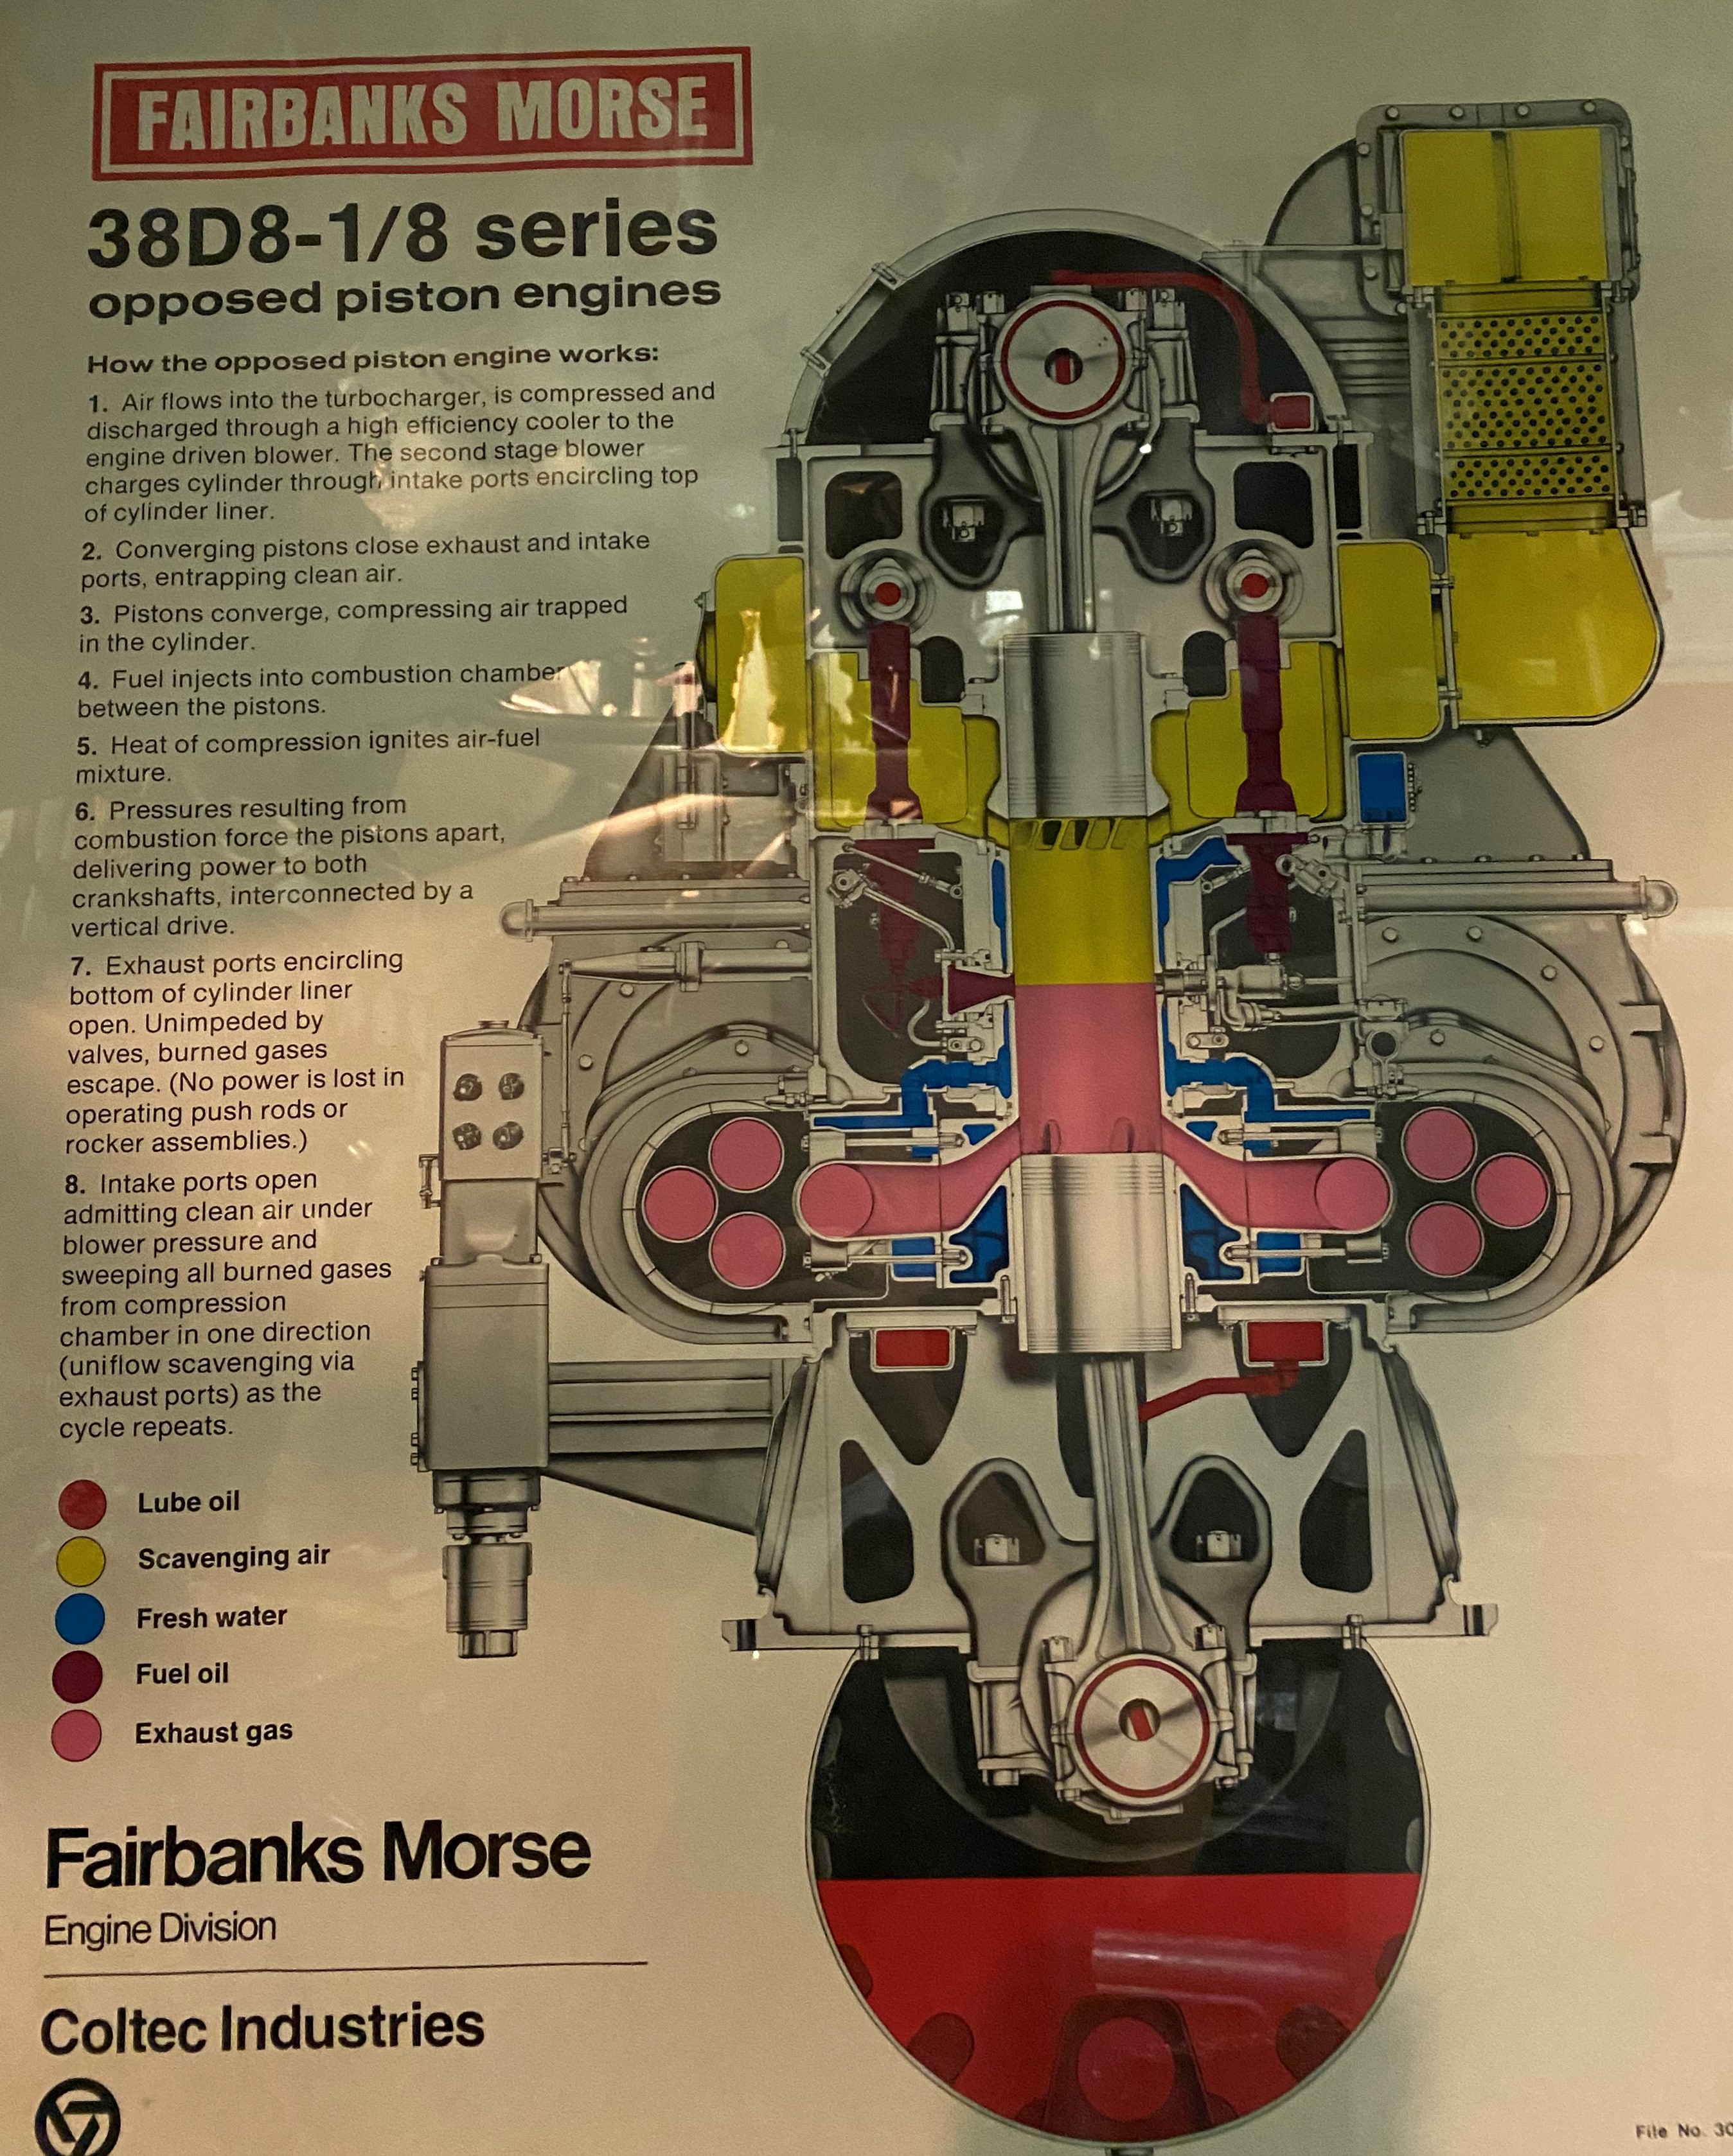 Fairbanks Morse Model 32 Stationary Engine  Fairbanks morse, Engineering,  Diesel engine